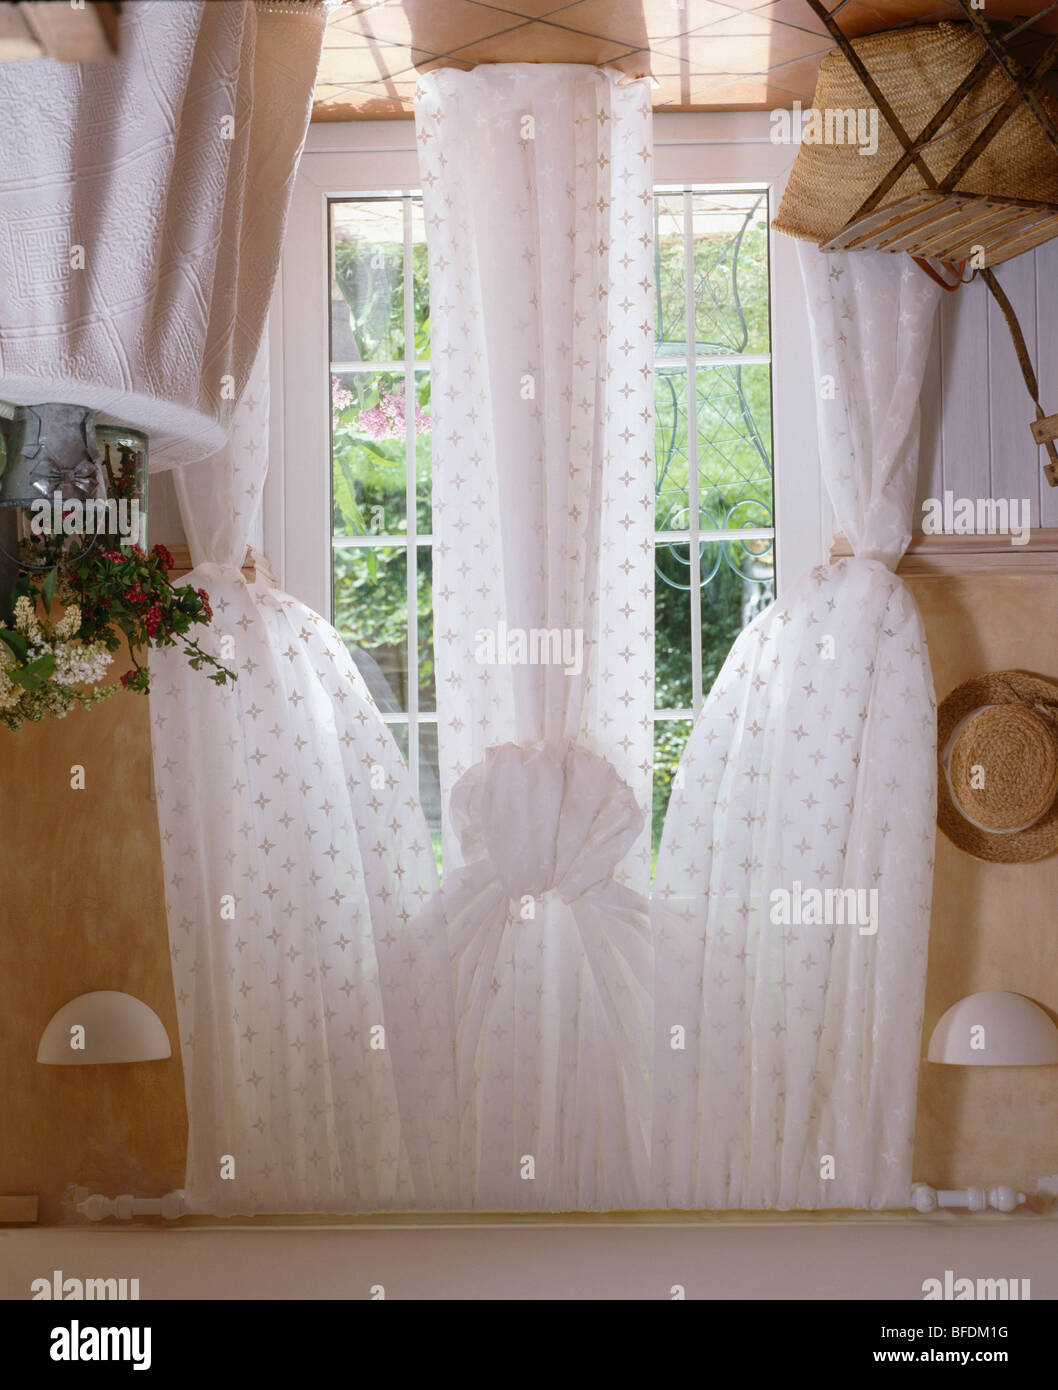 Rideaux voile blanc tacheté sur windows français en pays salle à manger Banque D'Images